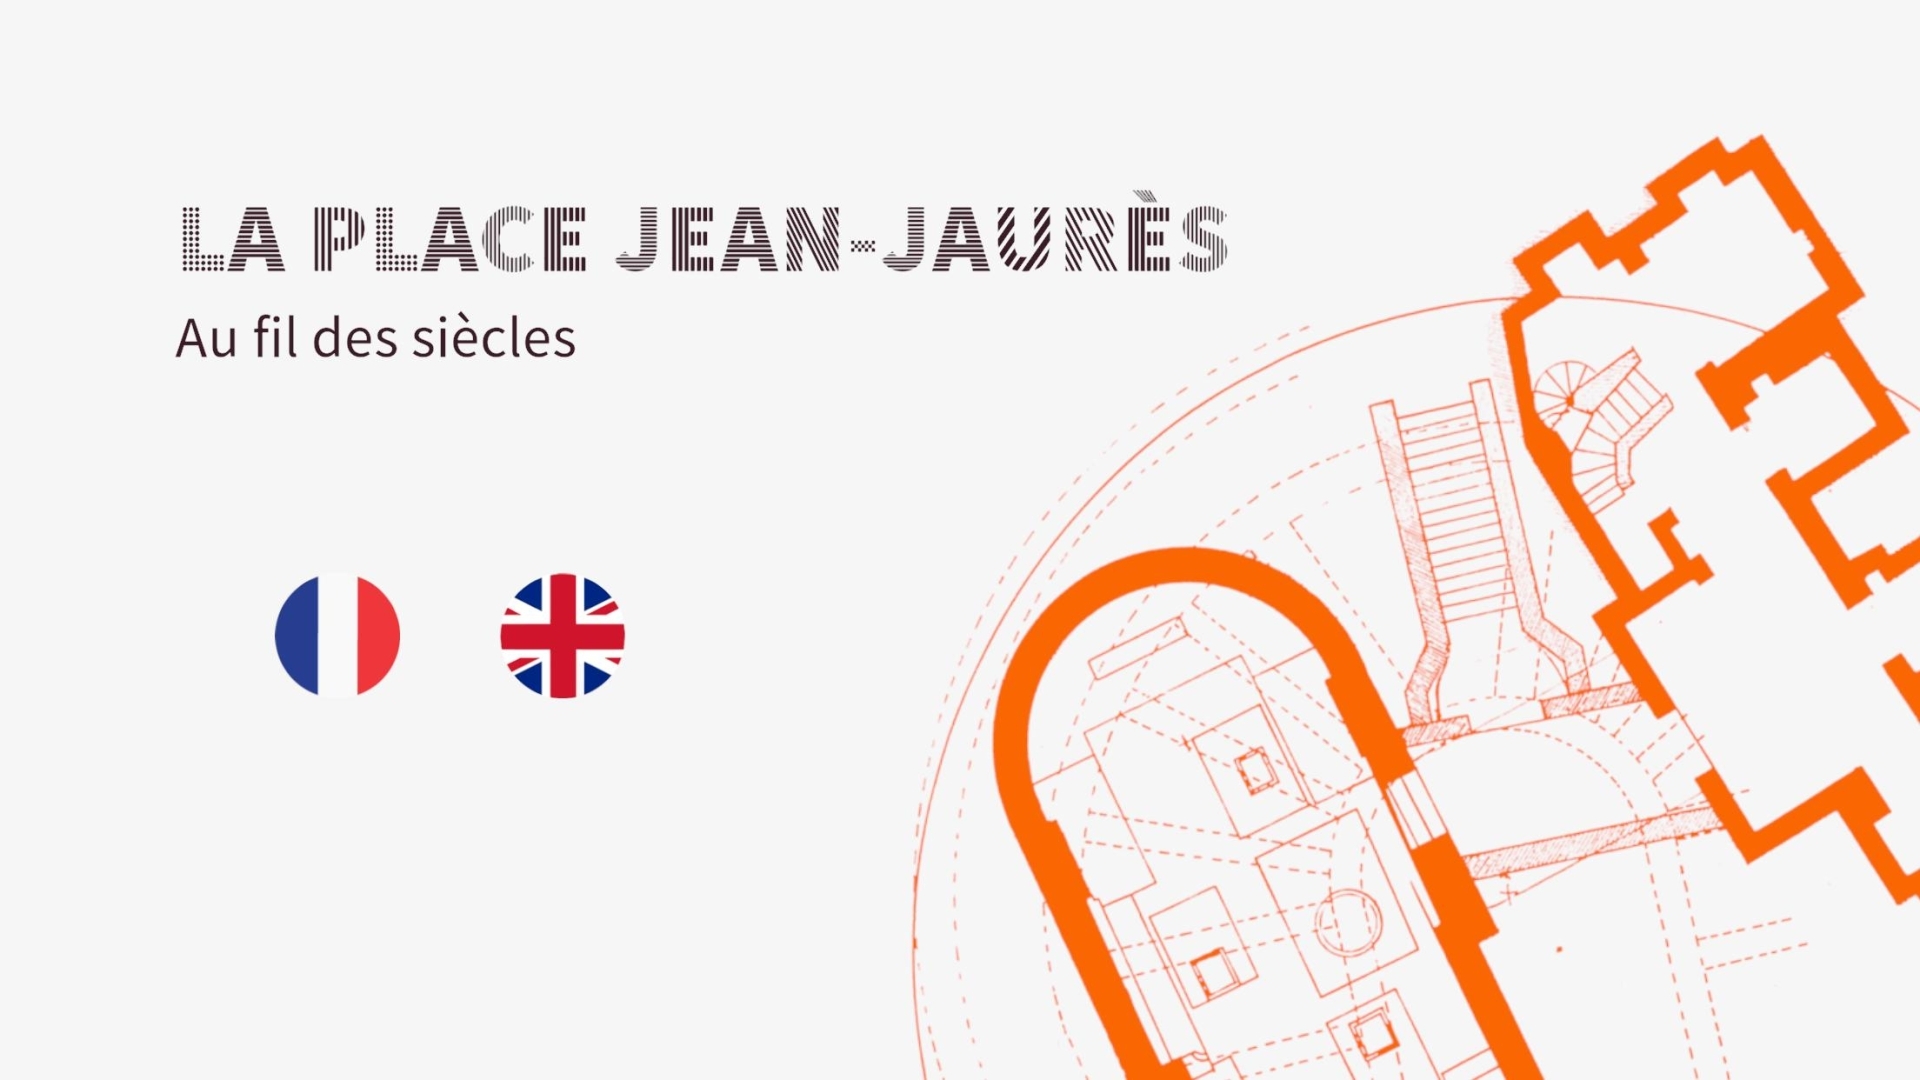 Ecran d'accueil de l'application mobile sur la place Jean Jaurès